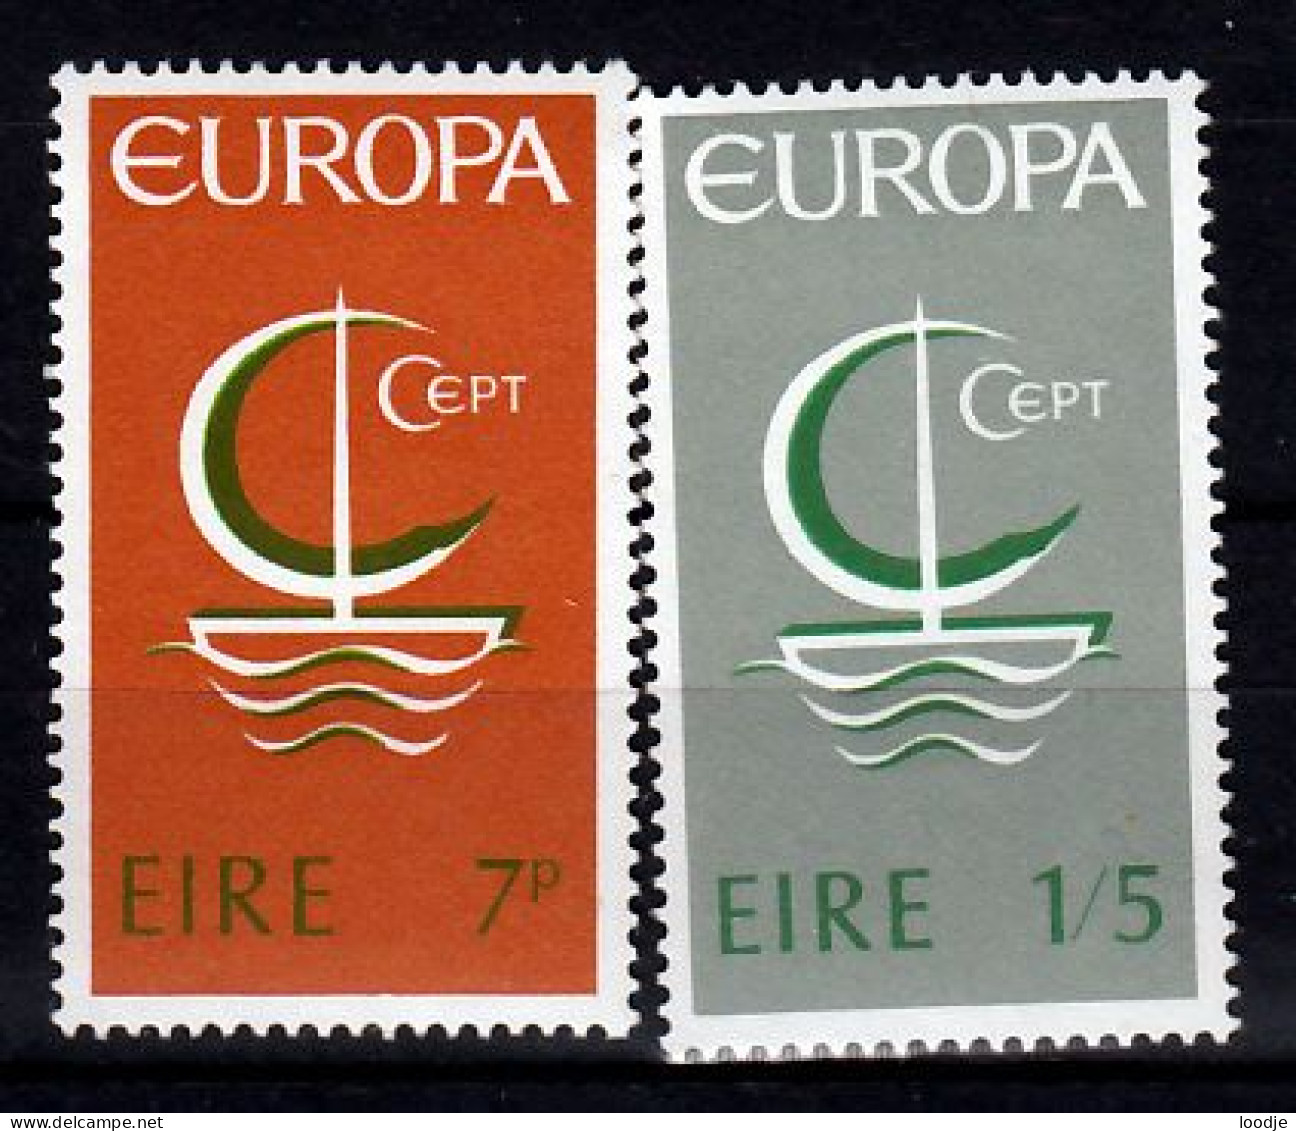 Ierland Europa Cept 1966 Postfris - 1966